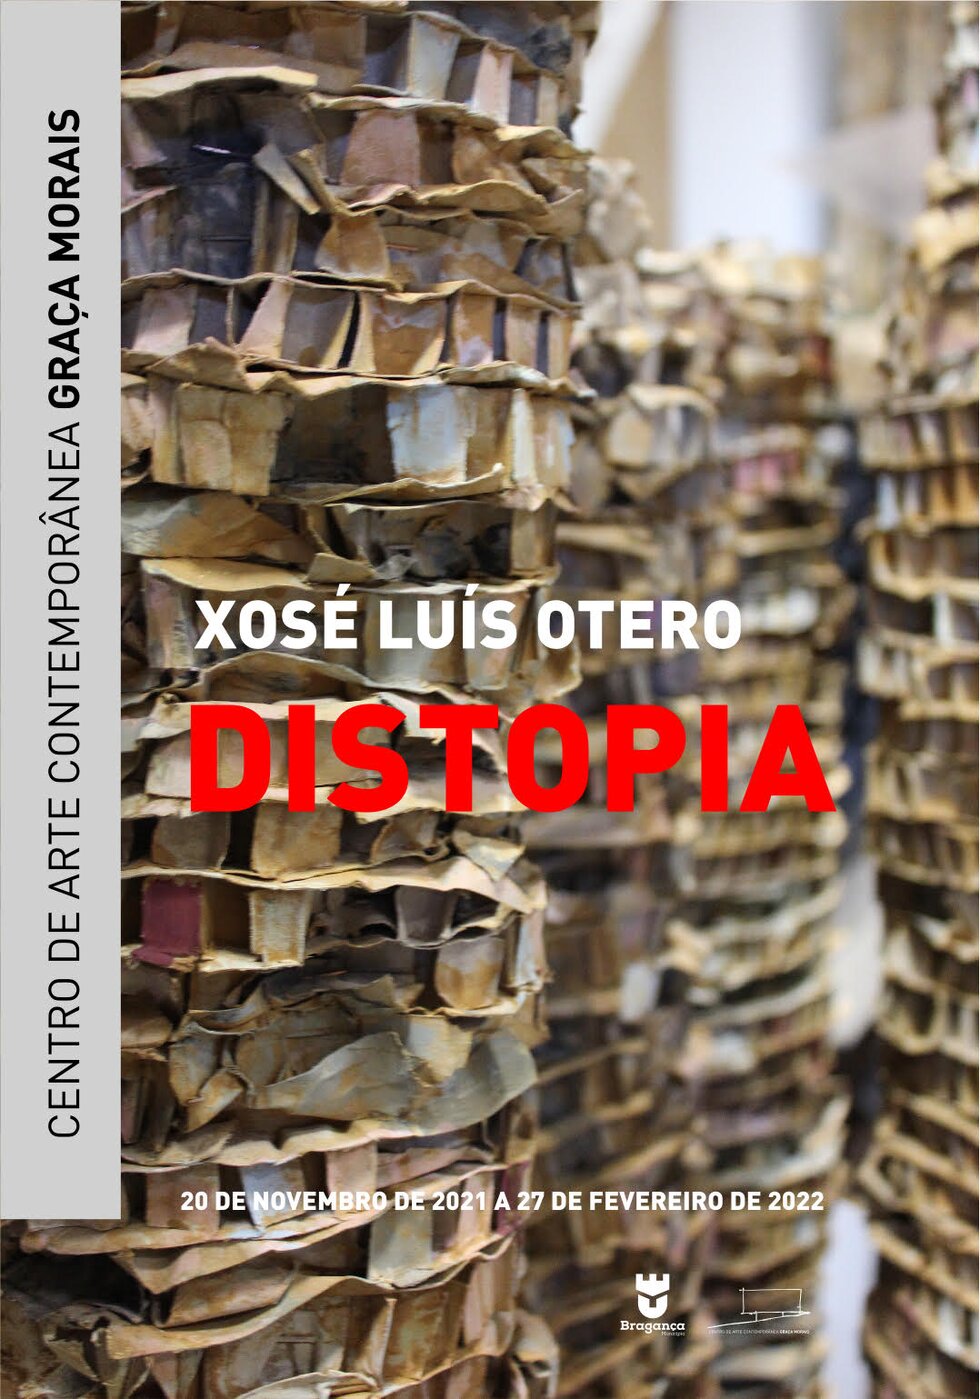 Cartaz expo distopia 1 980 2500